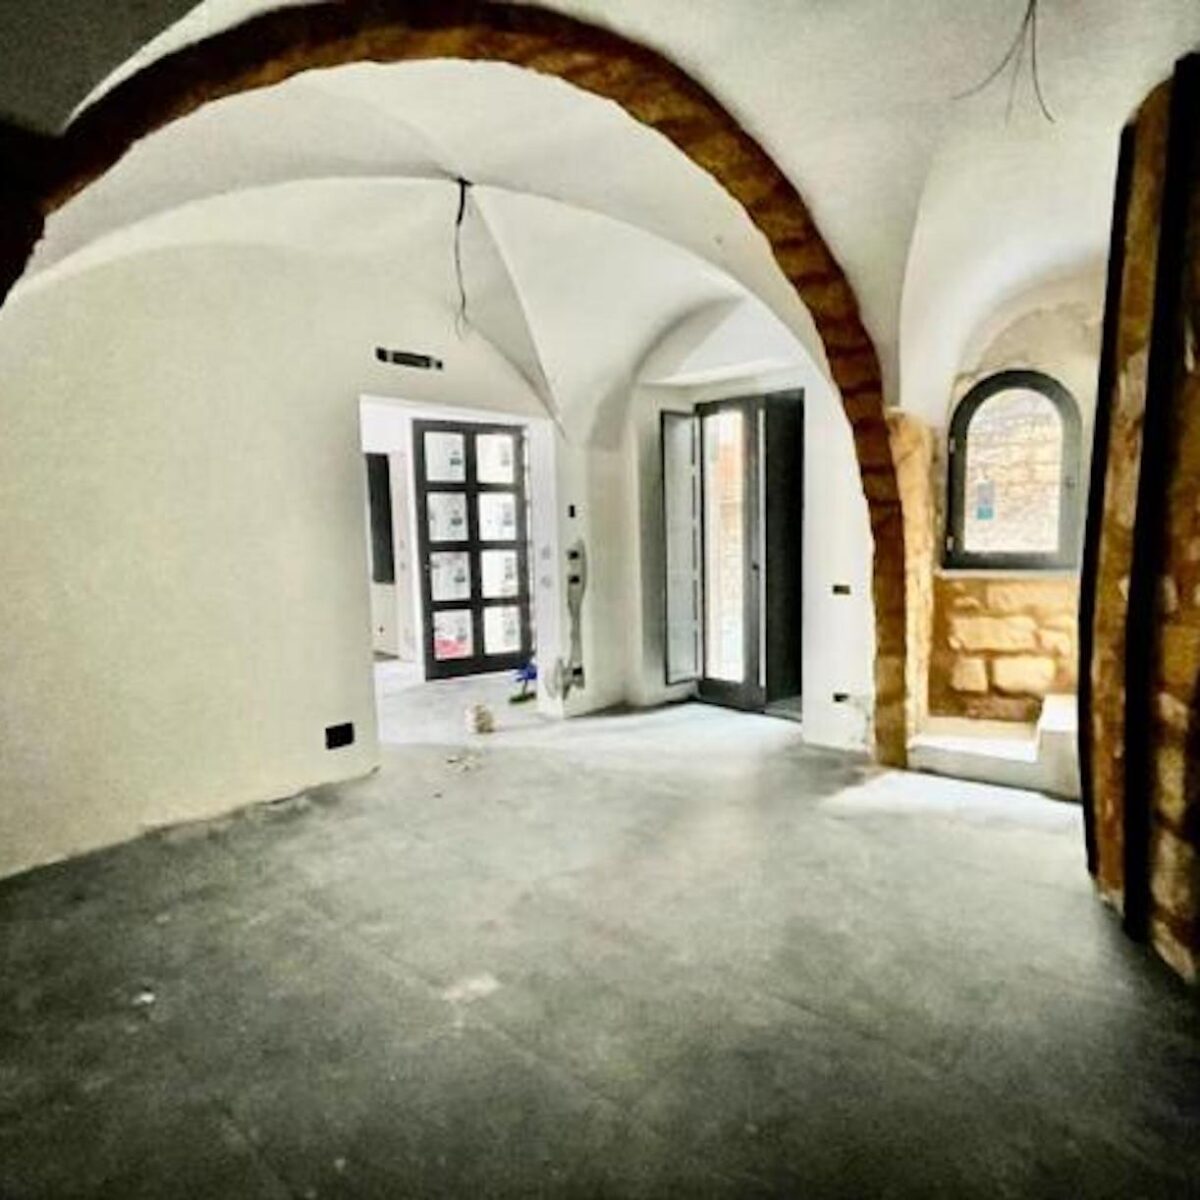 Compra una casa in Sicilia a 1 euro: ora vale mezzo milione